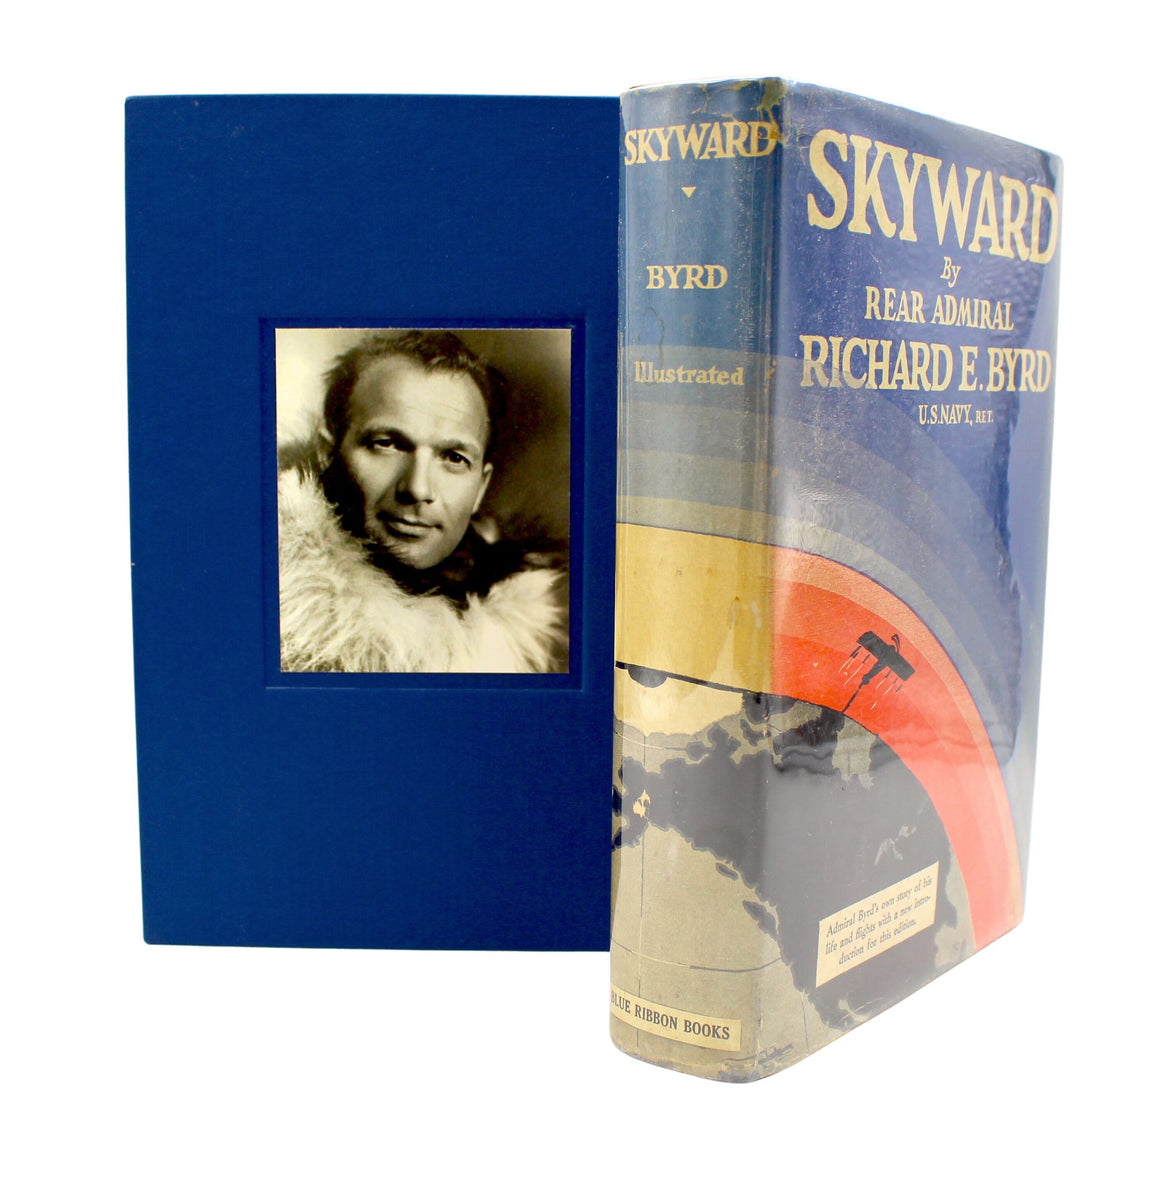 Skyward by Richard E. Byrd, First Edition, Eleventh Printing, 1931